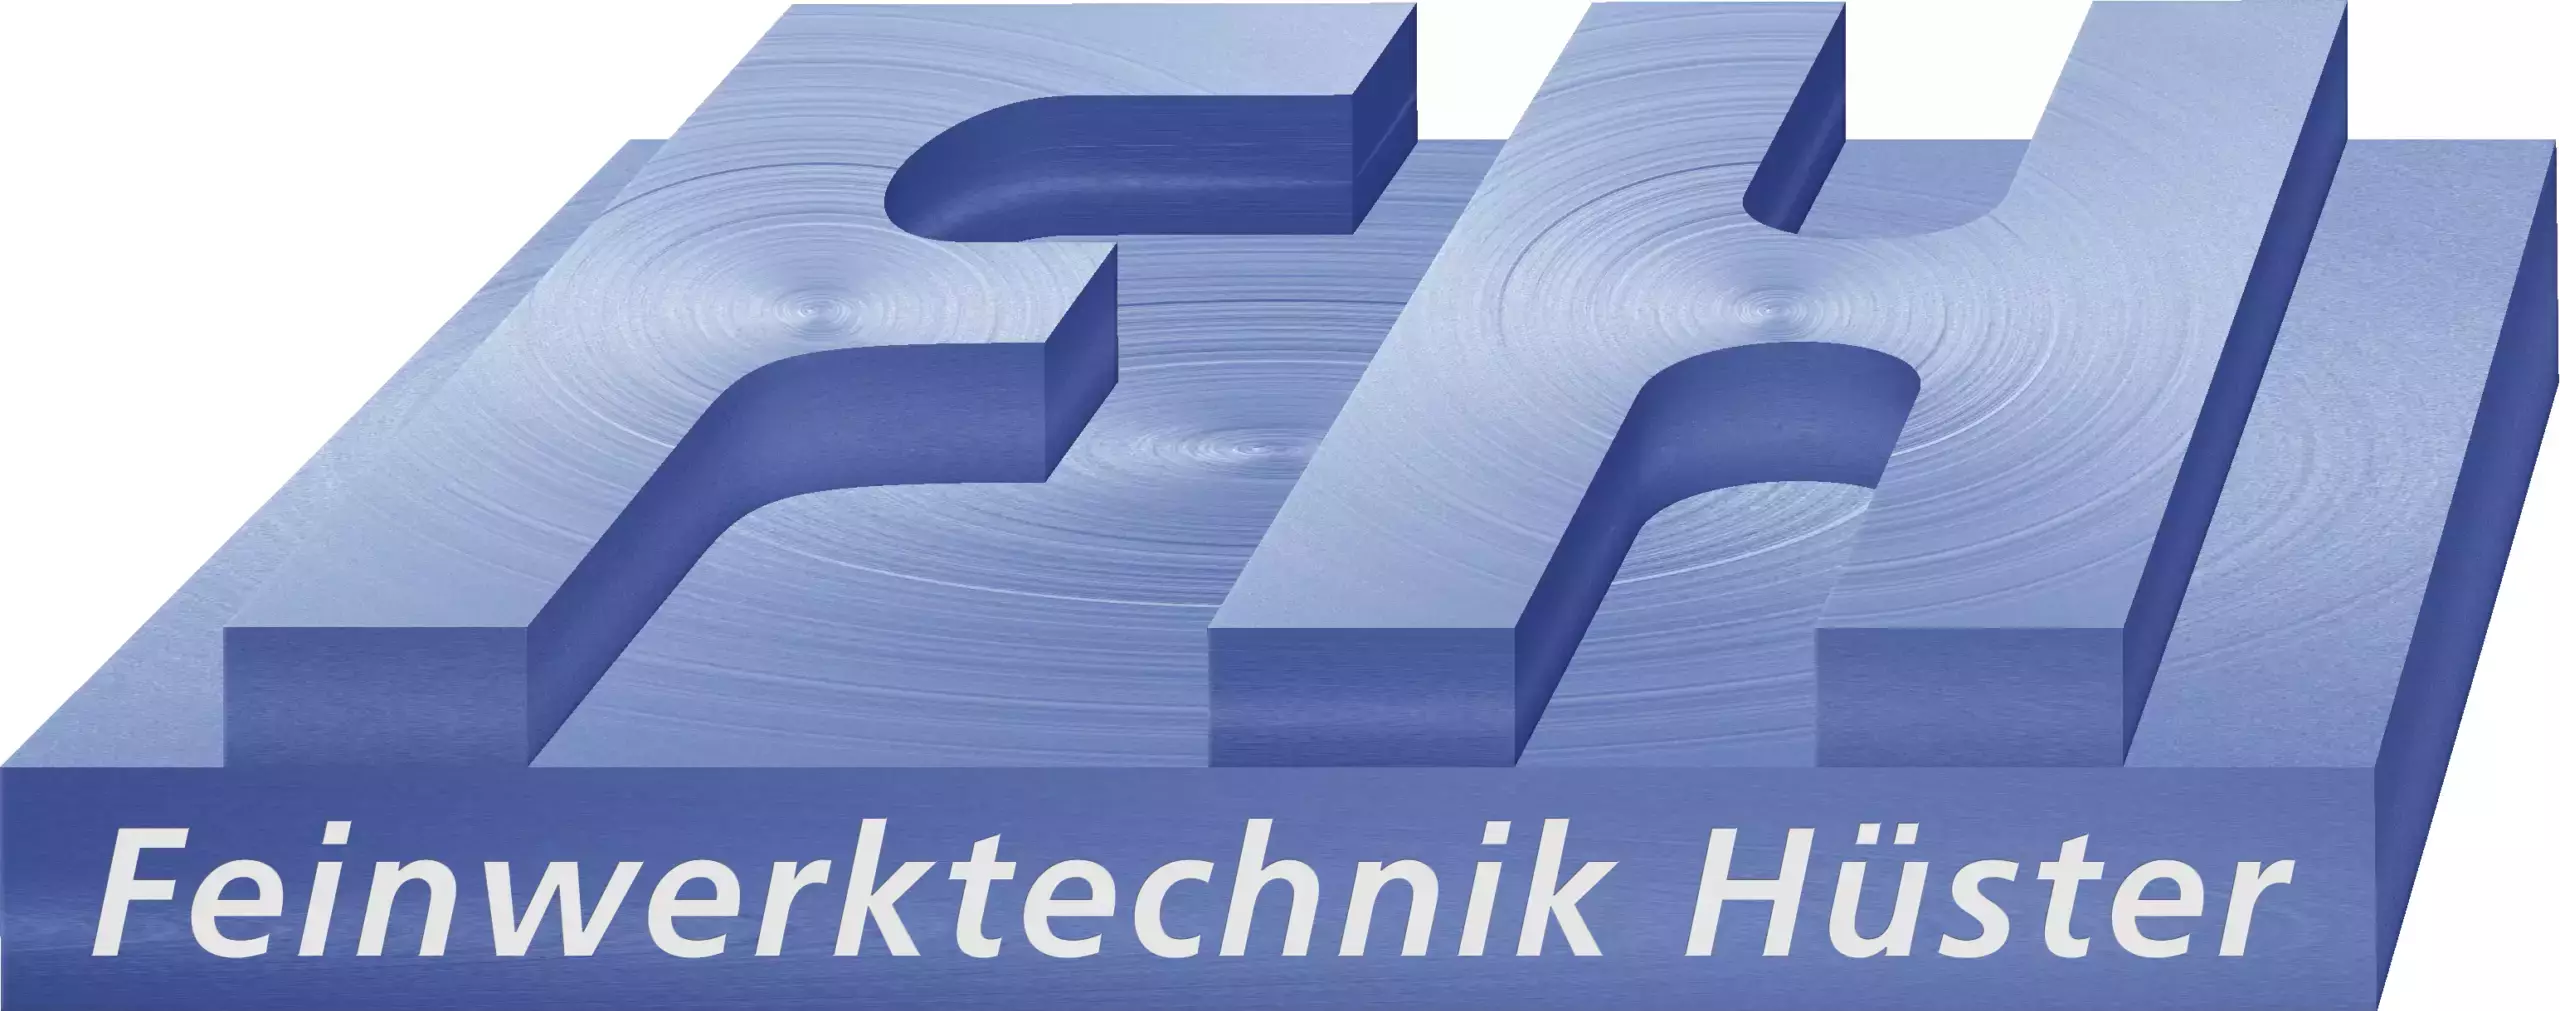 Feinwerktechnik Hüster GmbH & Co. KG